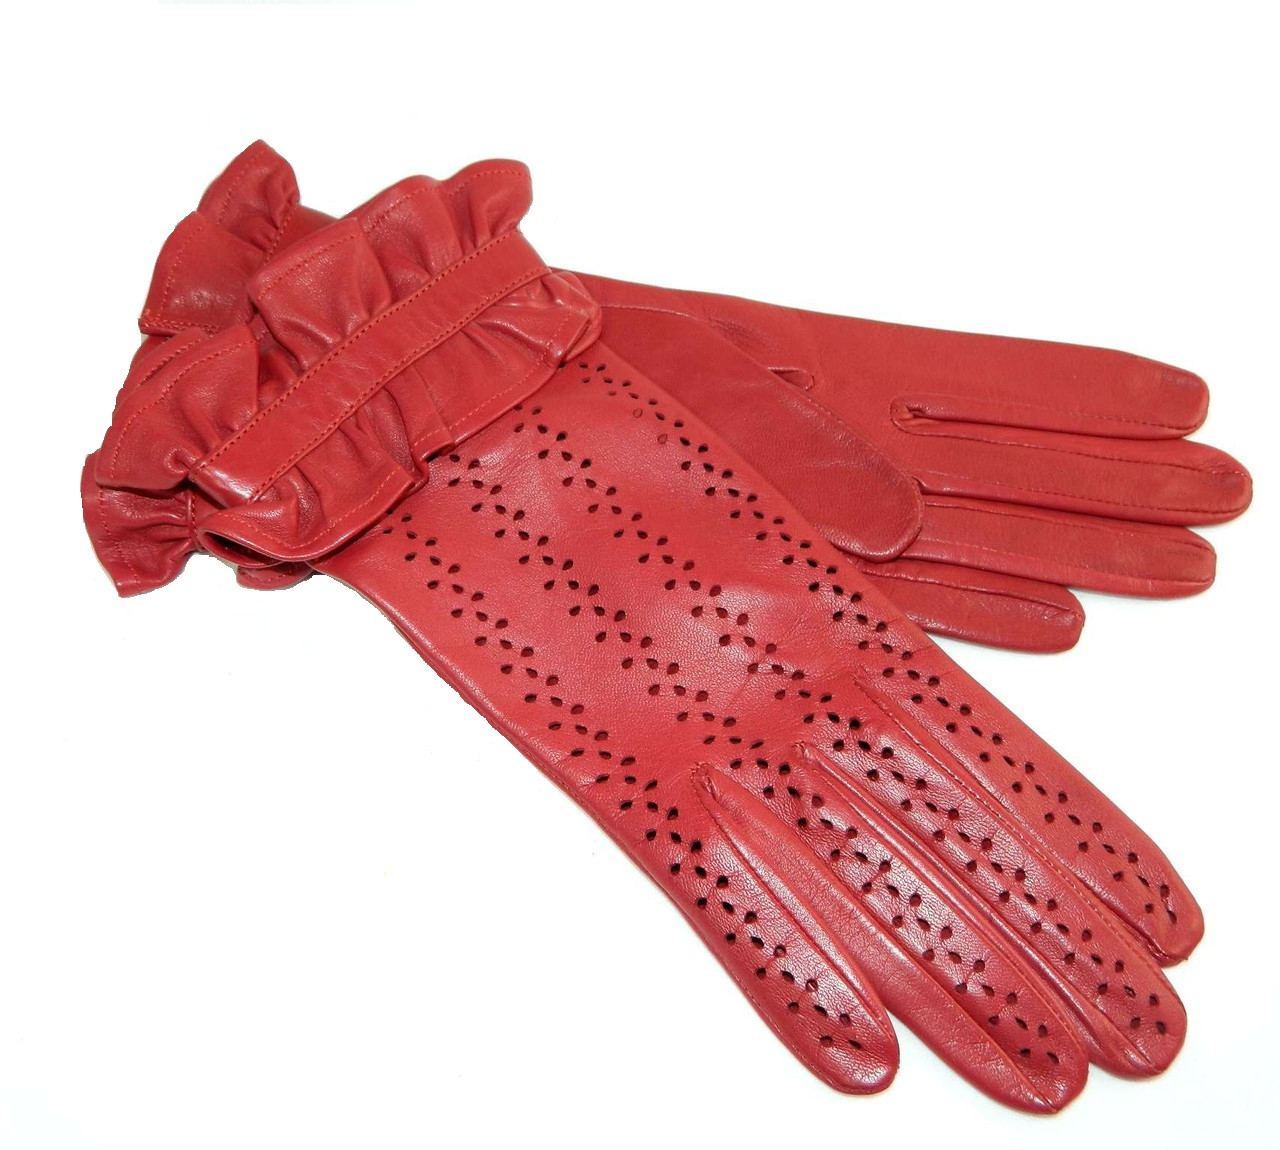 Купить перчатки без подкладки. Alpa Gloves. Перчатки женские из натуральной кожи Alpa Gloves. Румынские кожаные перчатки Santex. Красные кожаные перчатки.